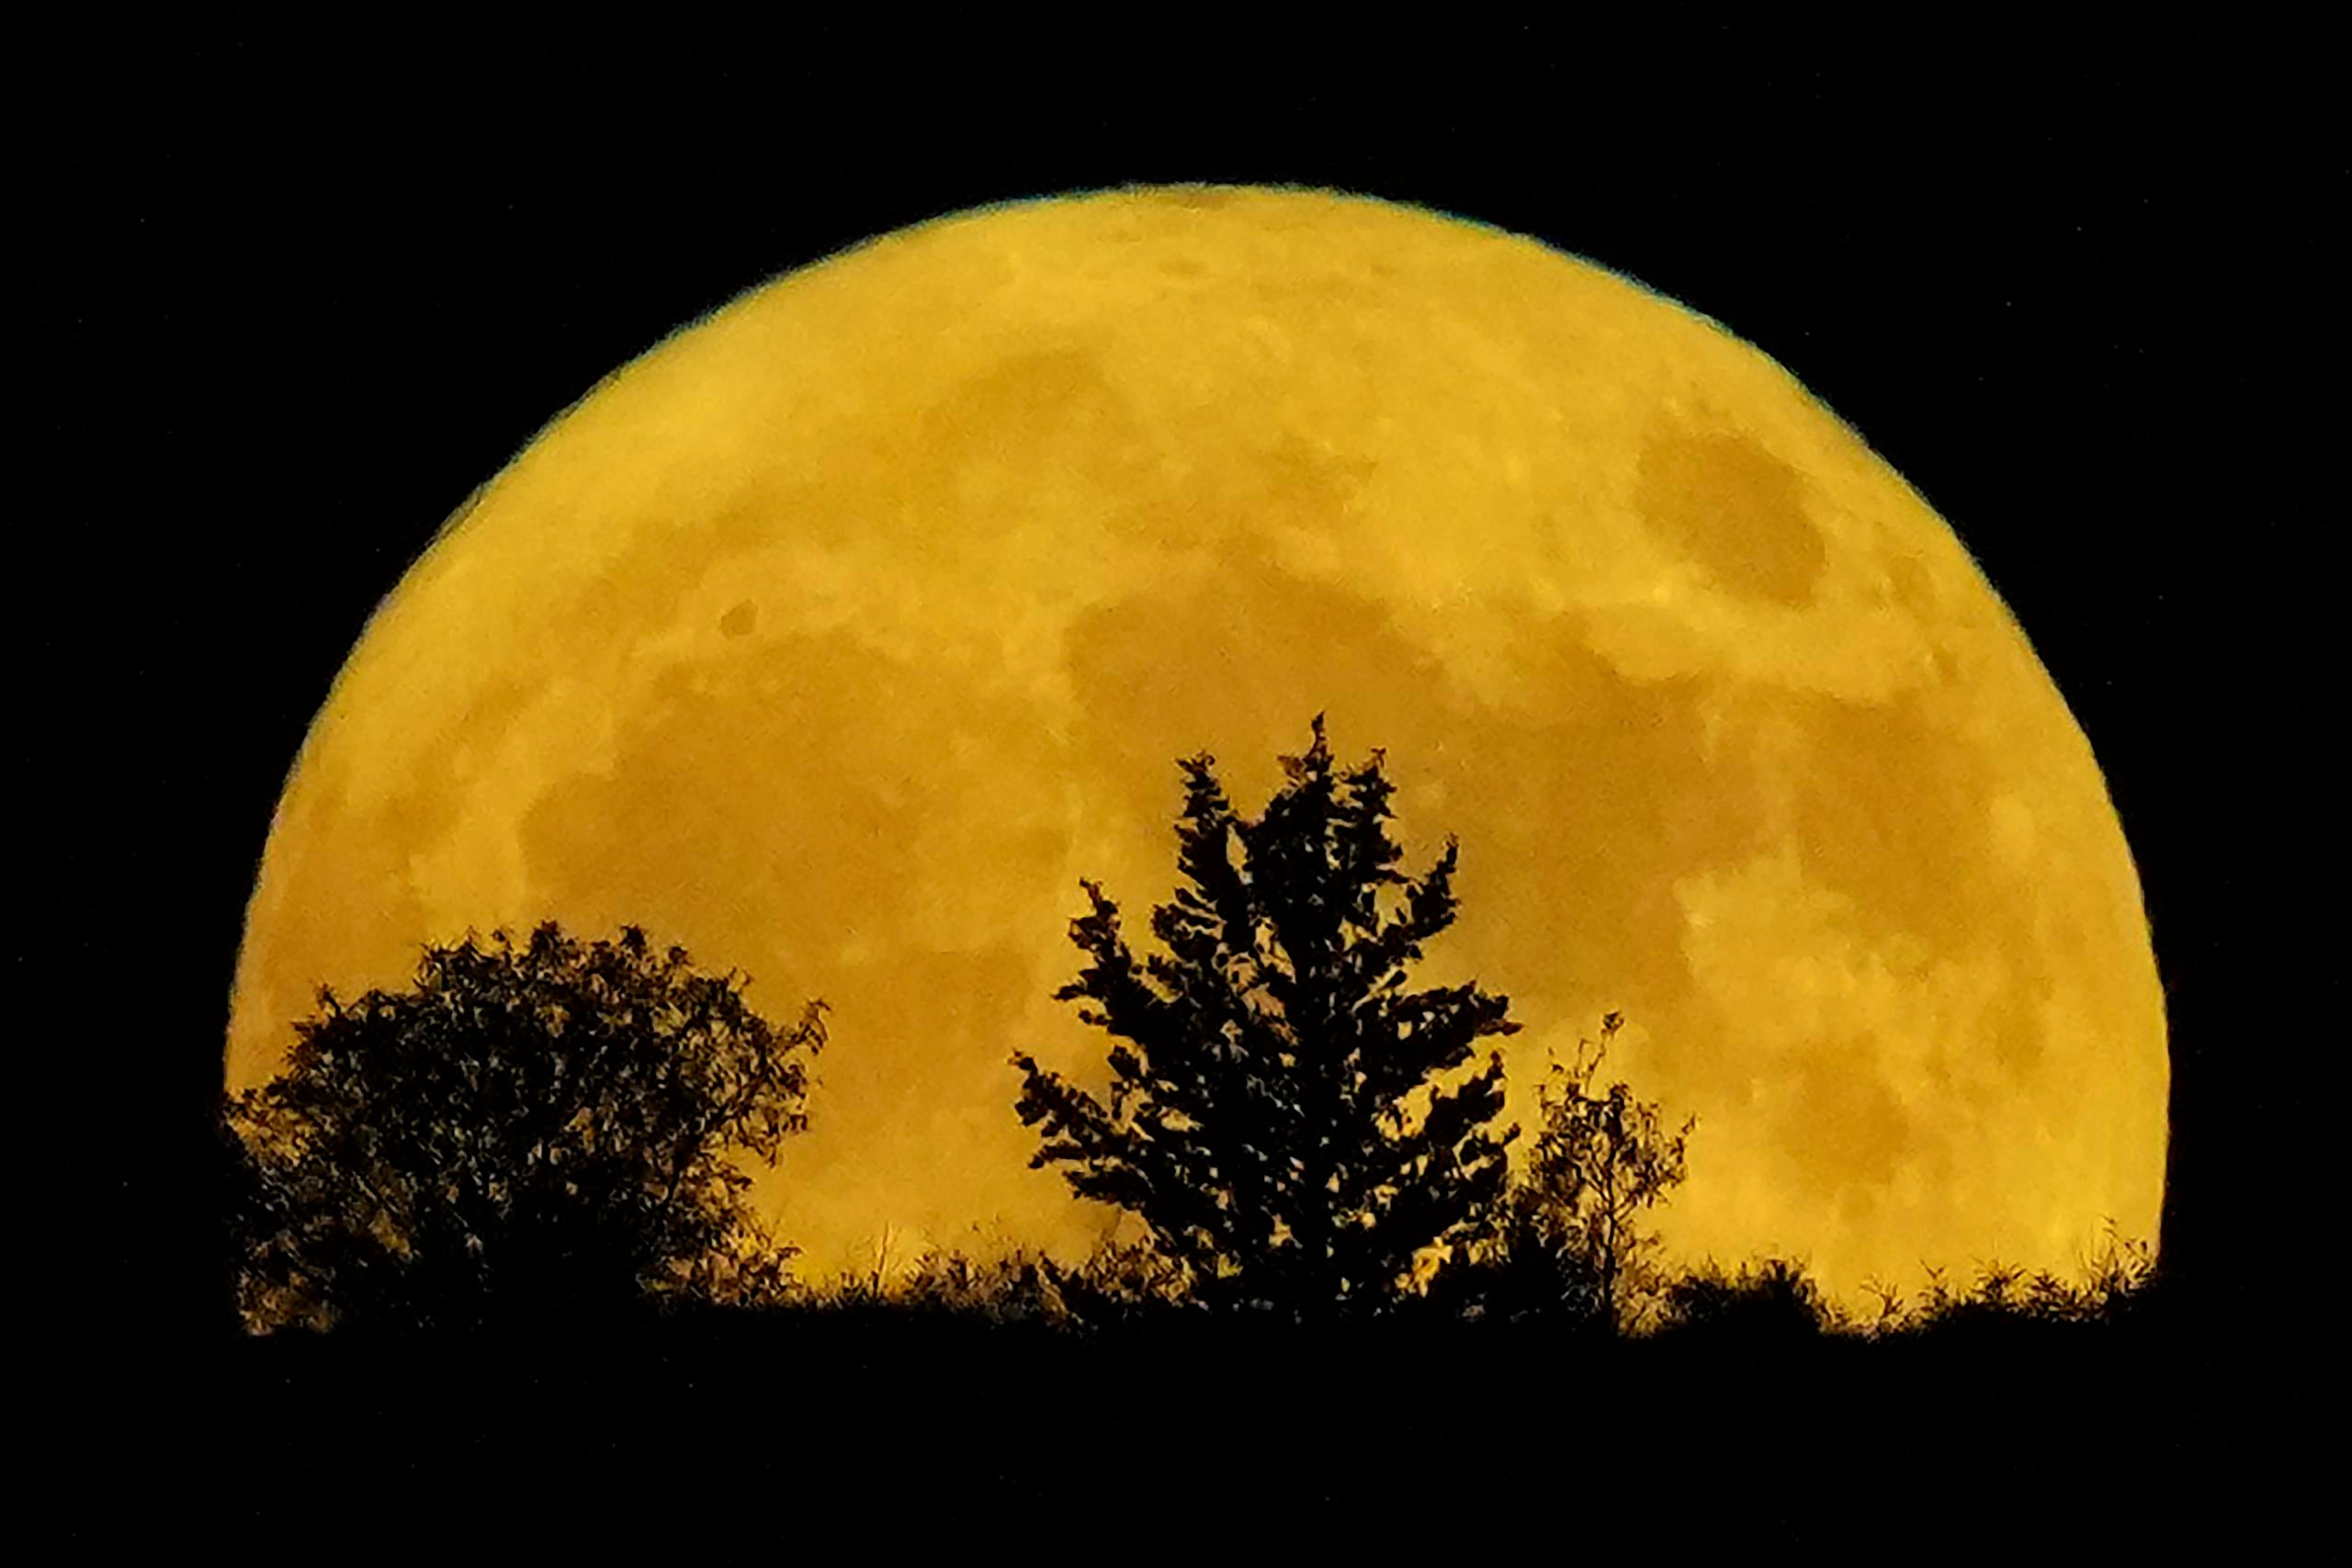 El divulgador científico recomendó observar la luna entre 6:50 y 7:20 p.m., cuando el astro estará mas cerca de objetos terrestres, lo que servirá como referencia para percatarse de que se ve más grande.